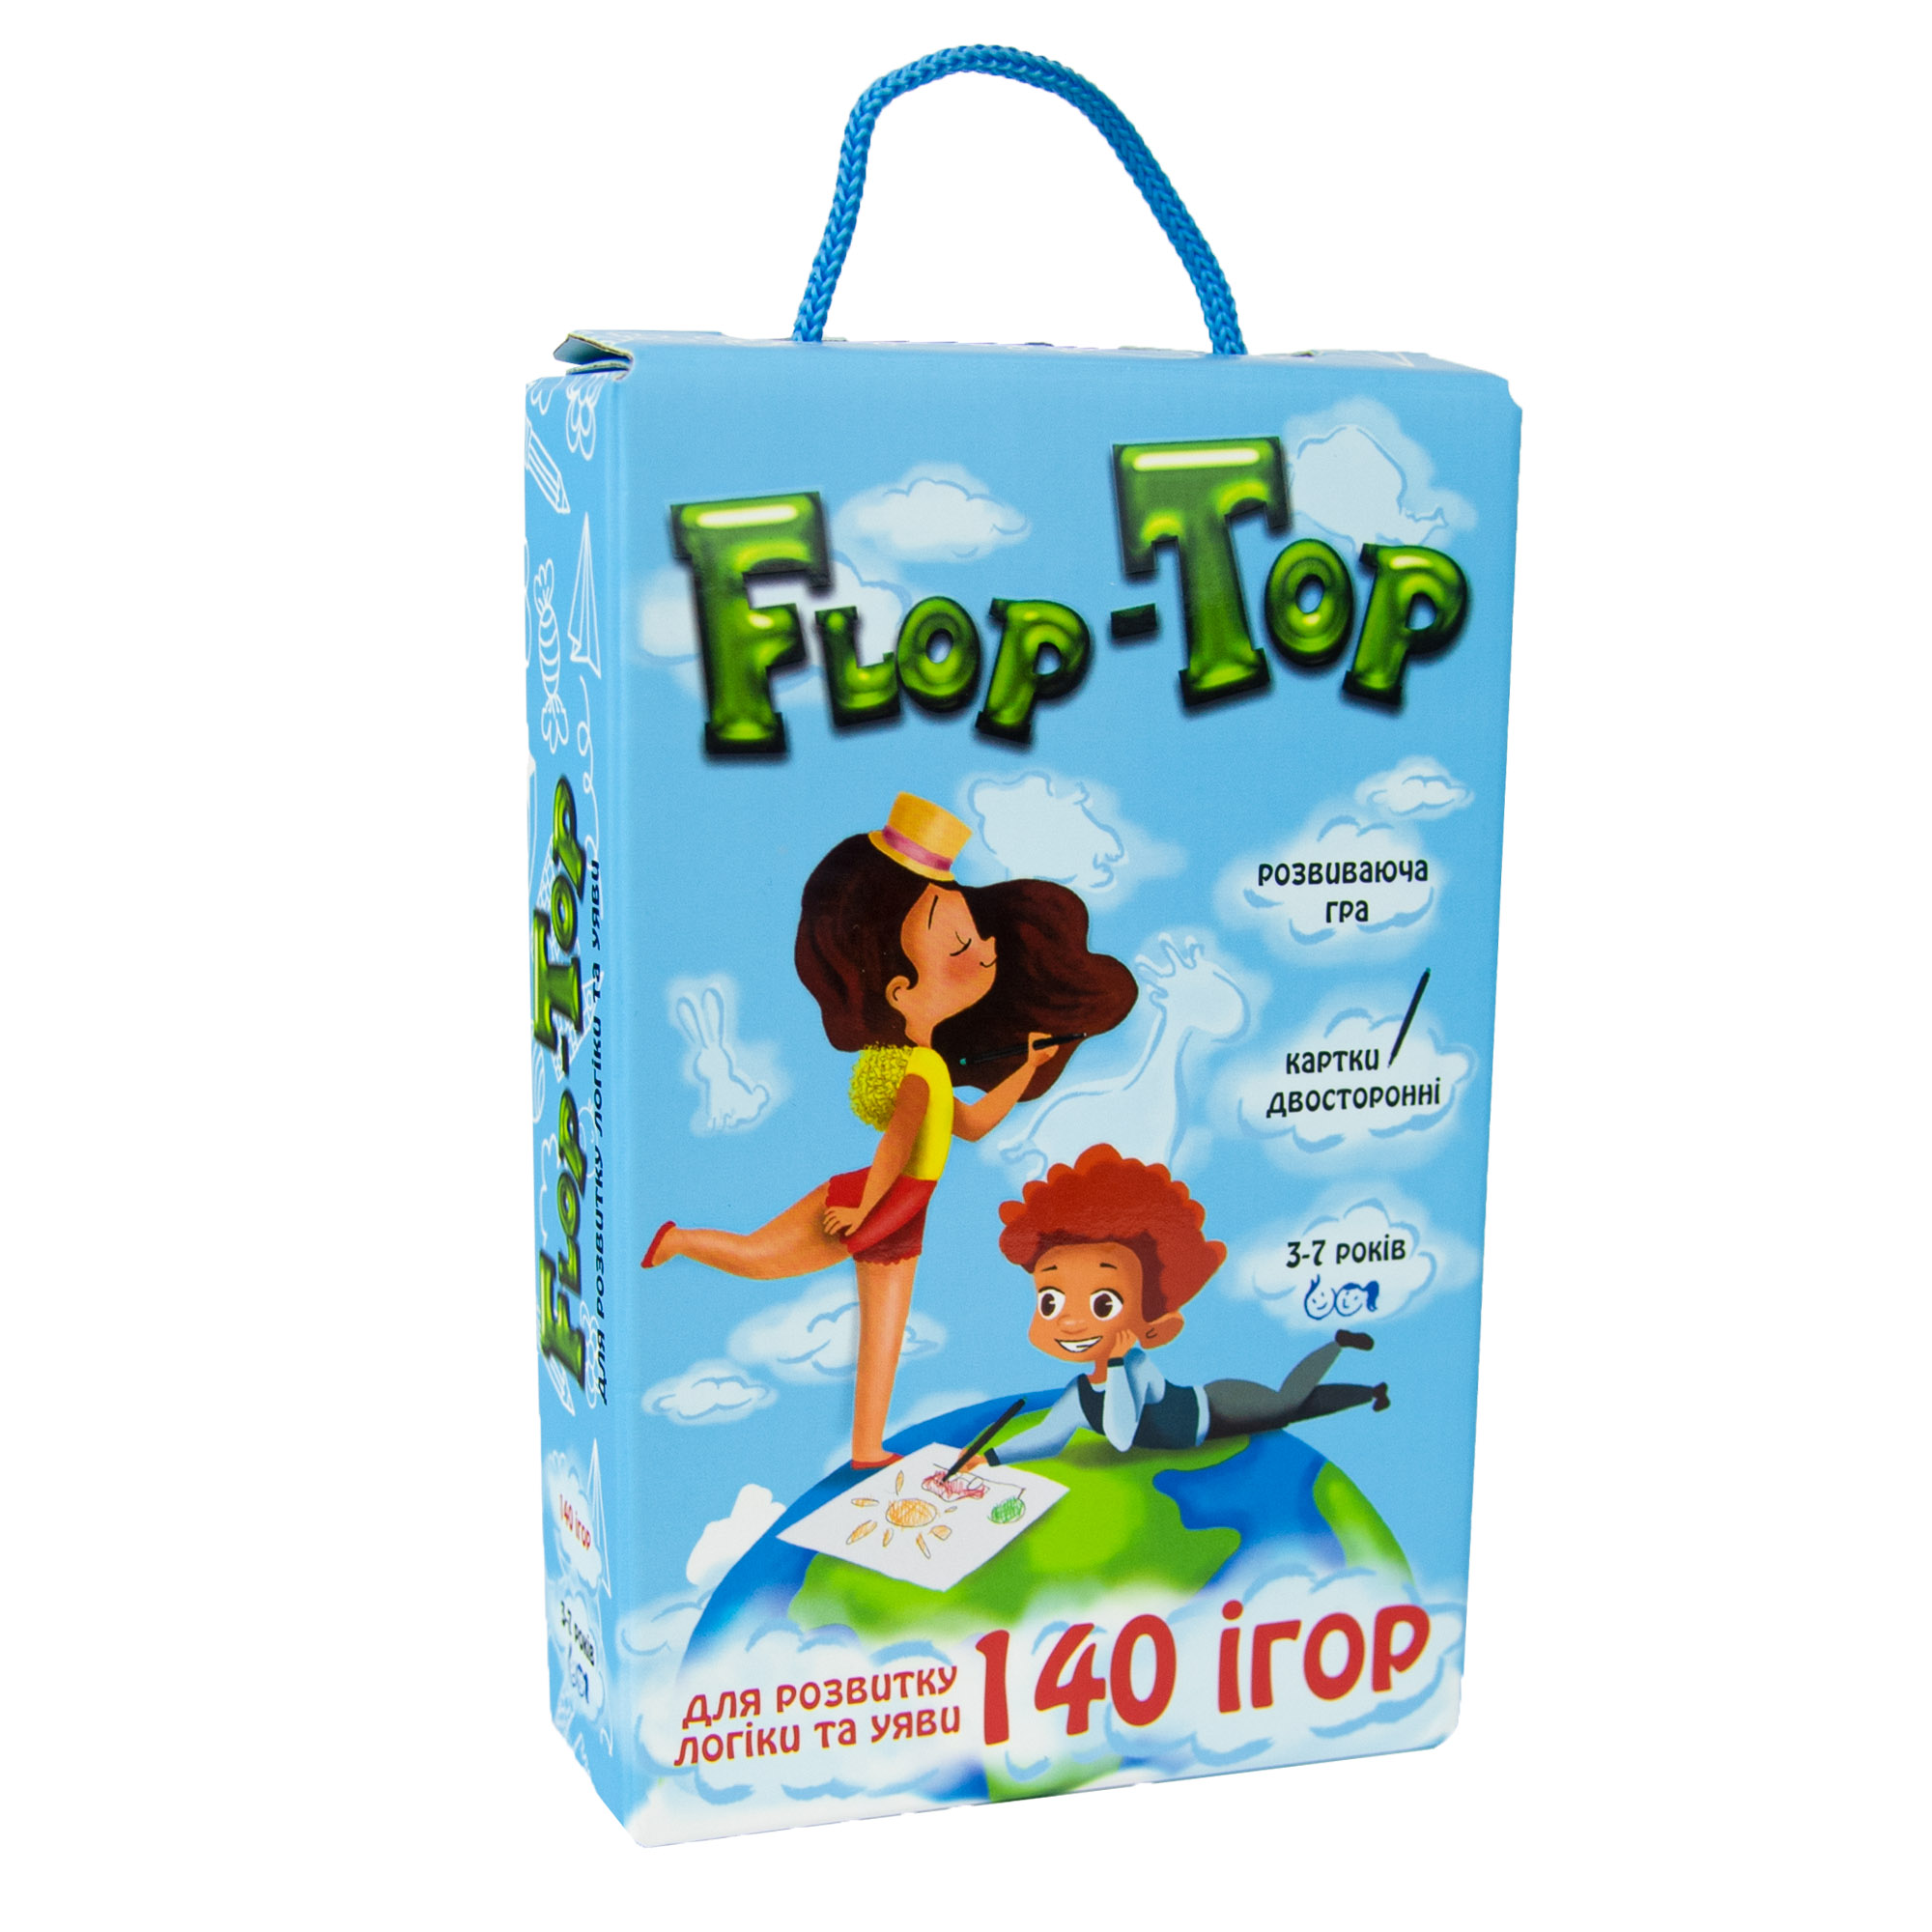 Board game Strateg 30868 (ukr) "Flop-Top"